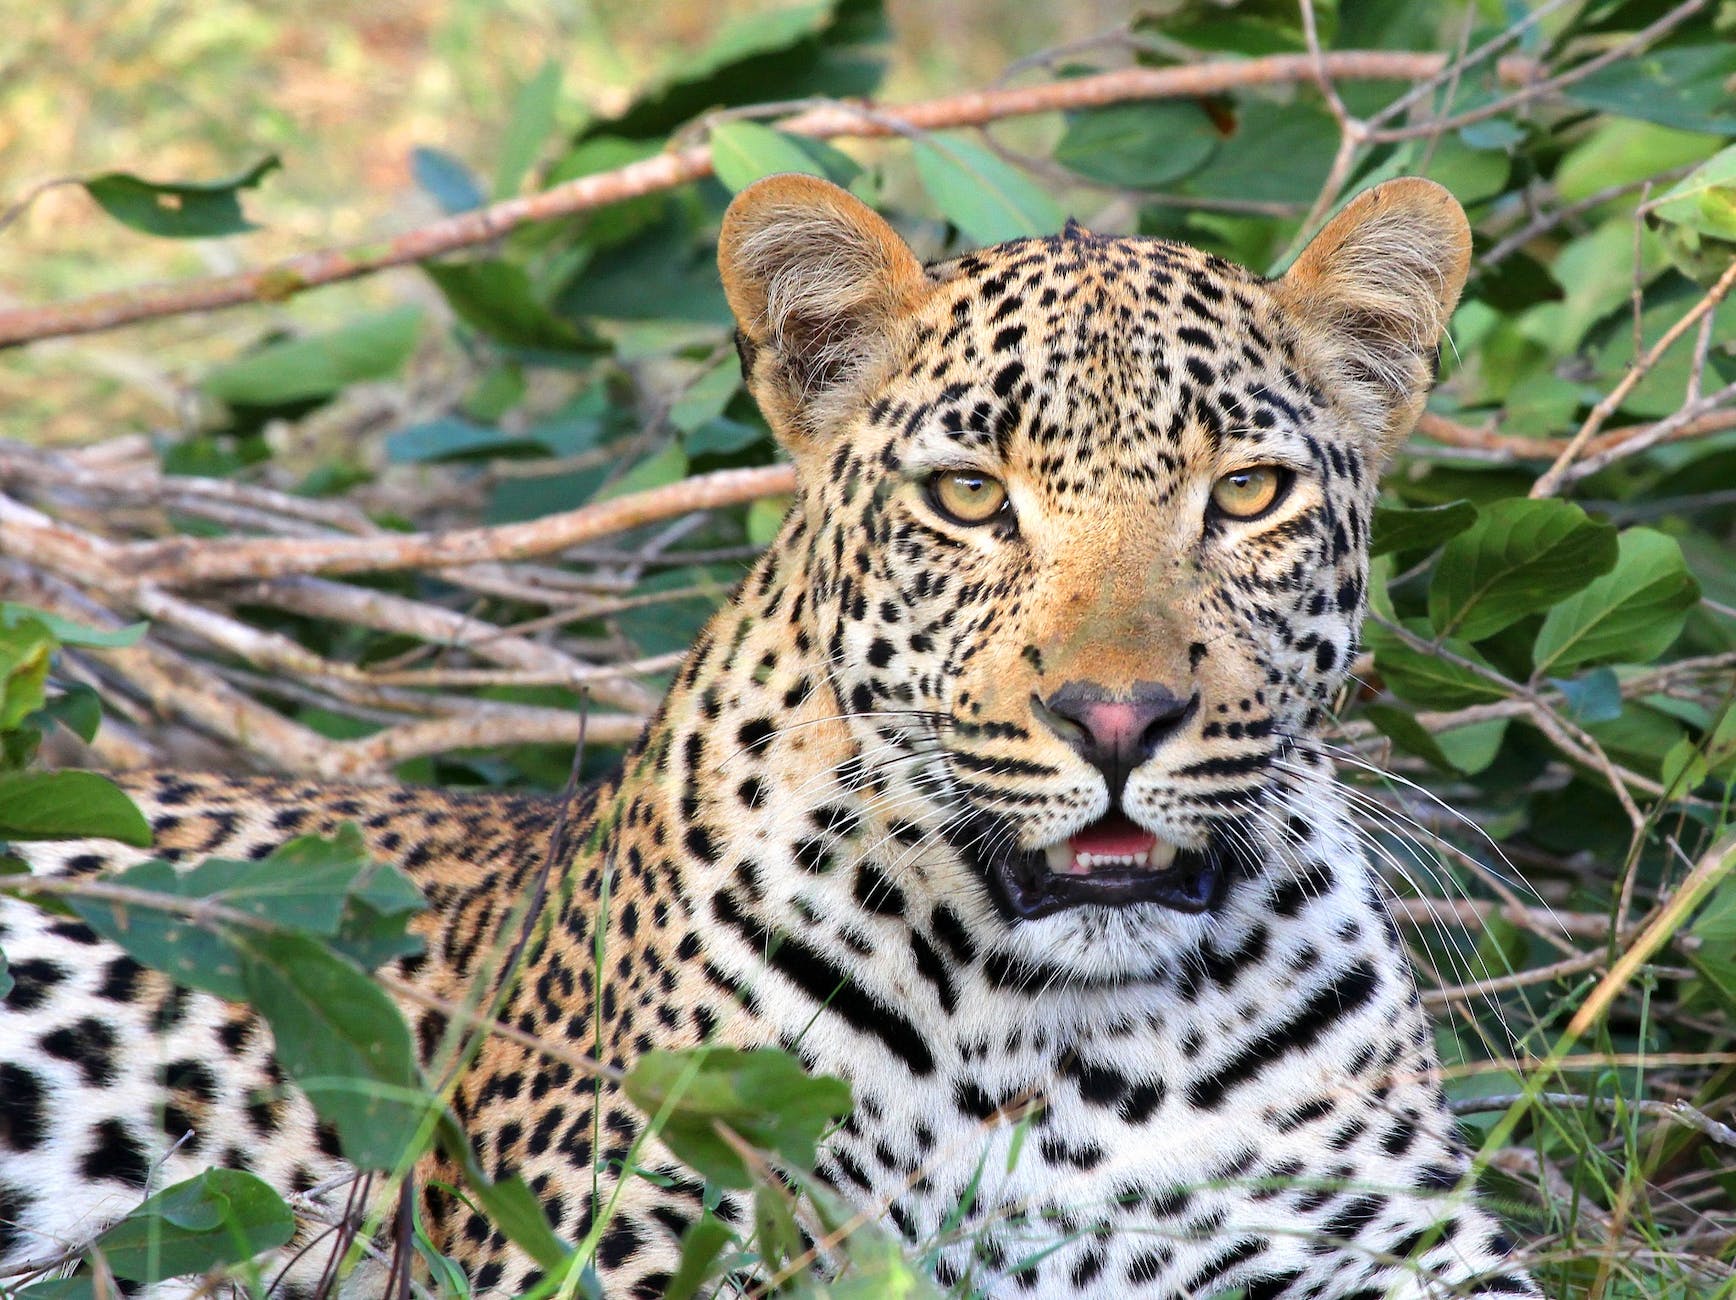 Meet the African Leopard